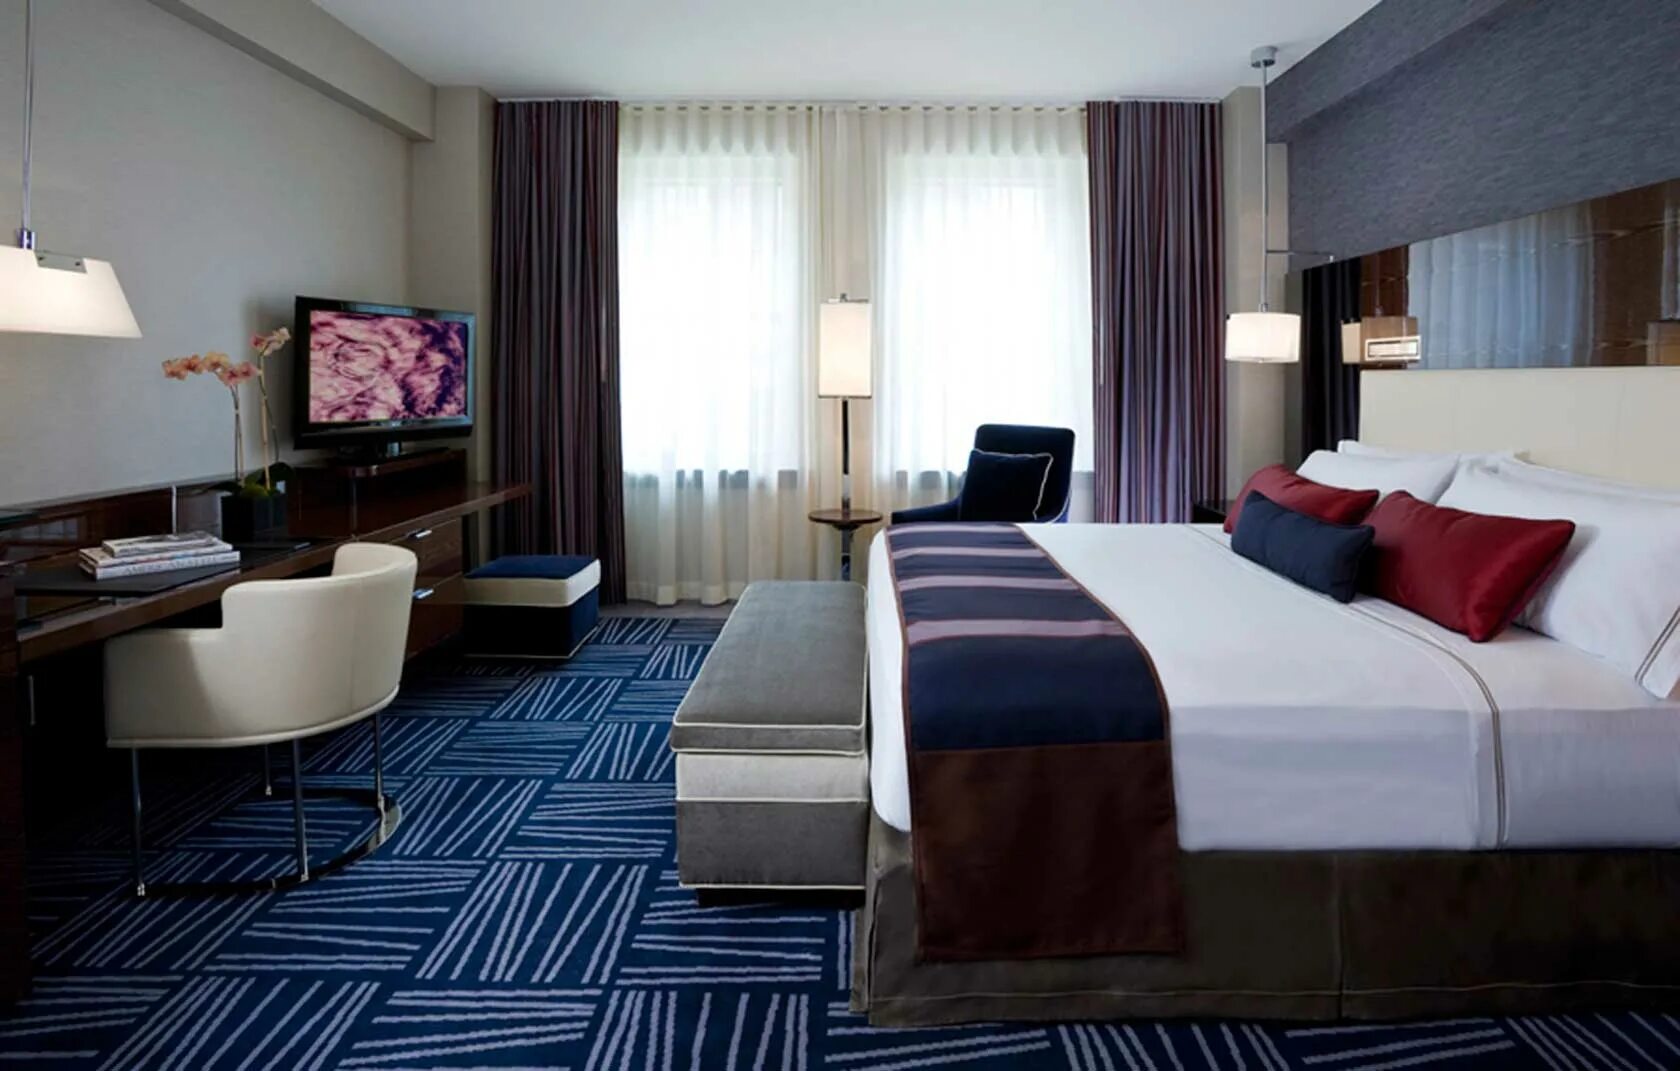 Room rooms разница. Гостиничный номер. Интерьер гостиницы комната. Интерьер номера отеля. Спальня в гостиничном стиле.